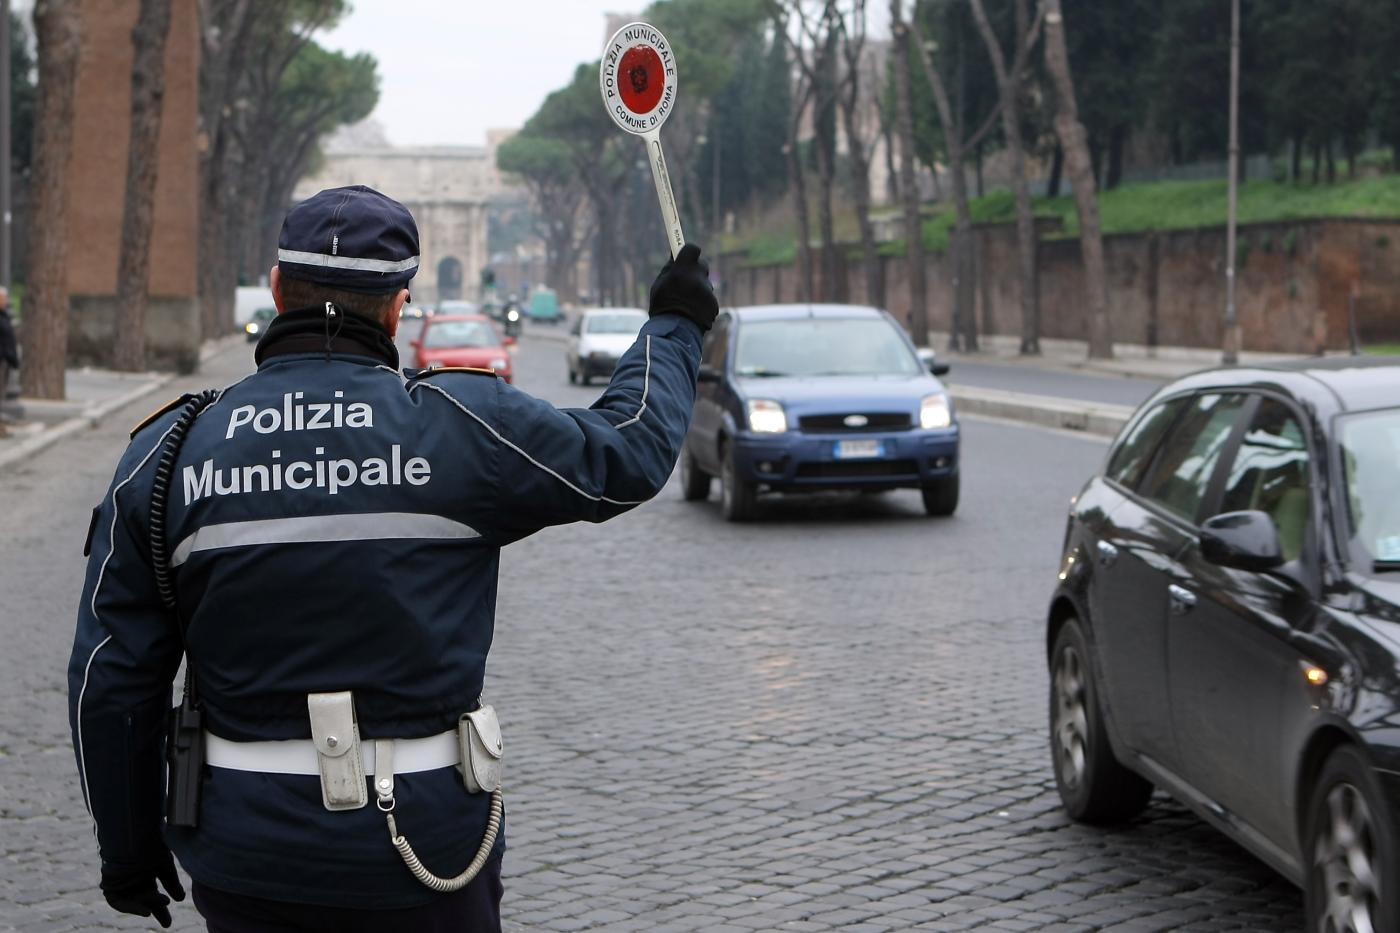 Puglia, querelato il capo della polizia municipale. Accusa: ha preso a schiaffi una donna durante una multa